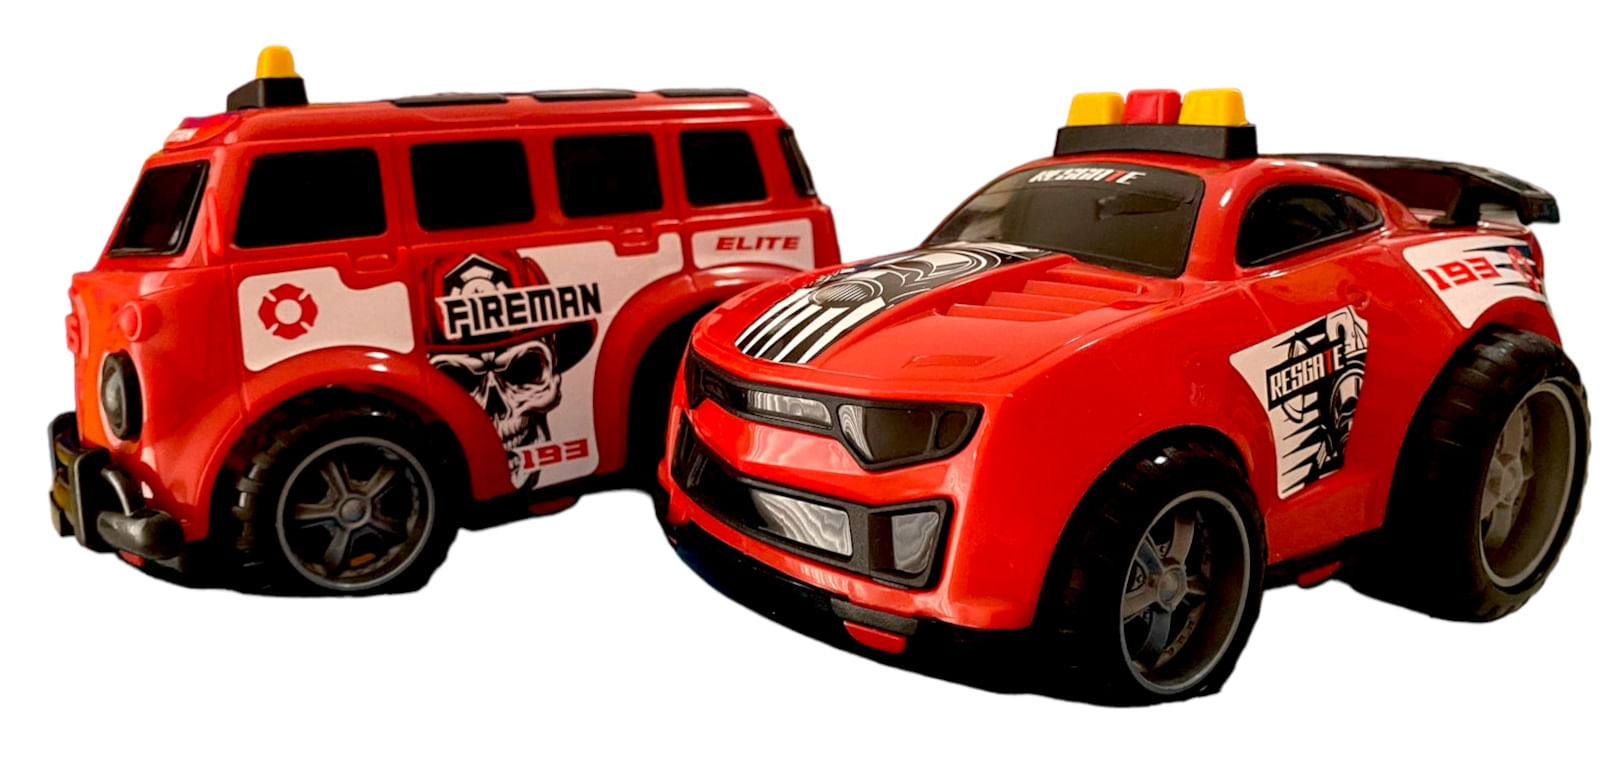 Caminhão de brinquedo Truck Bombeiro Vermelho Bs Toys